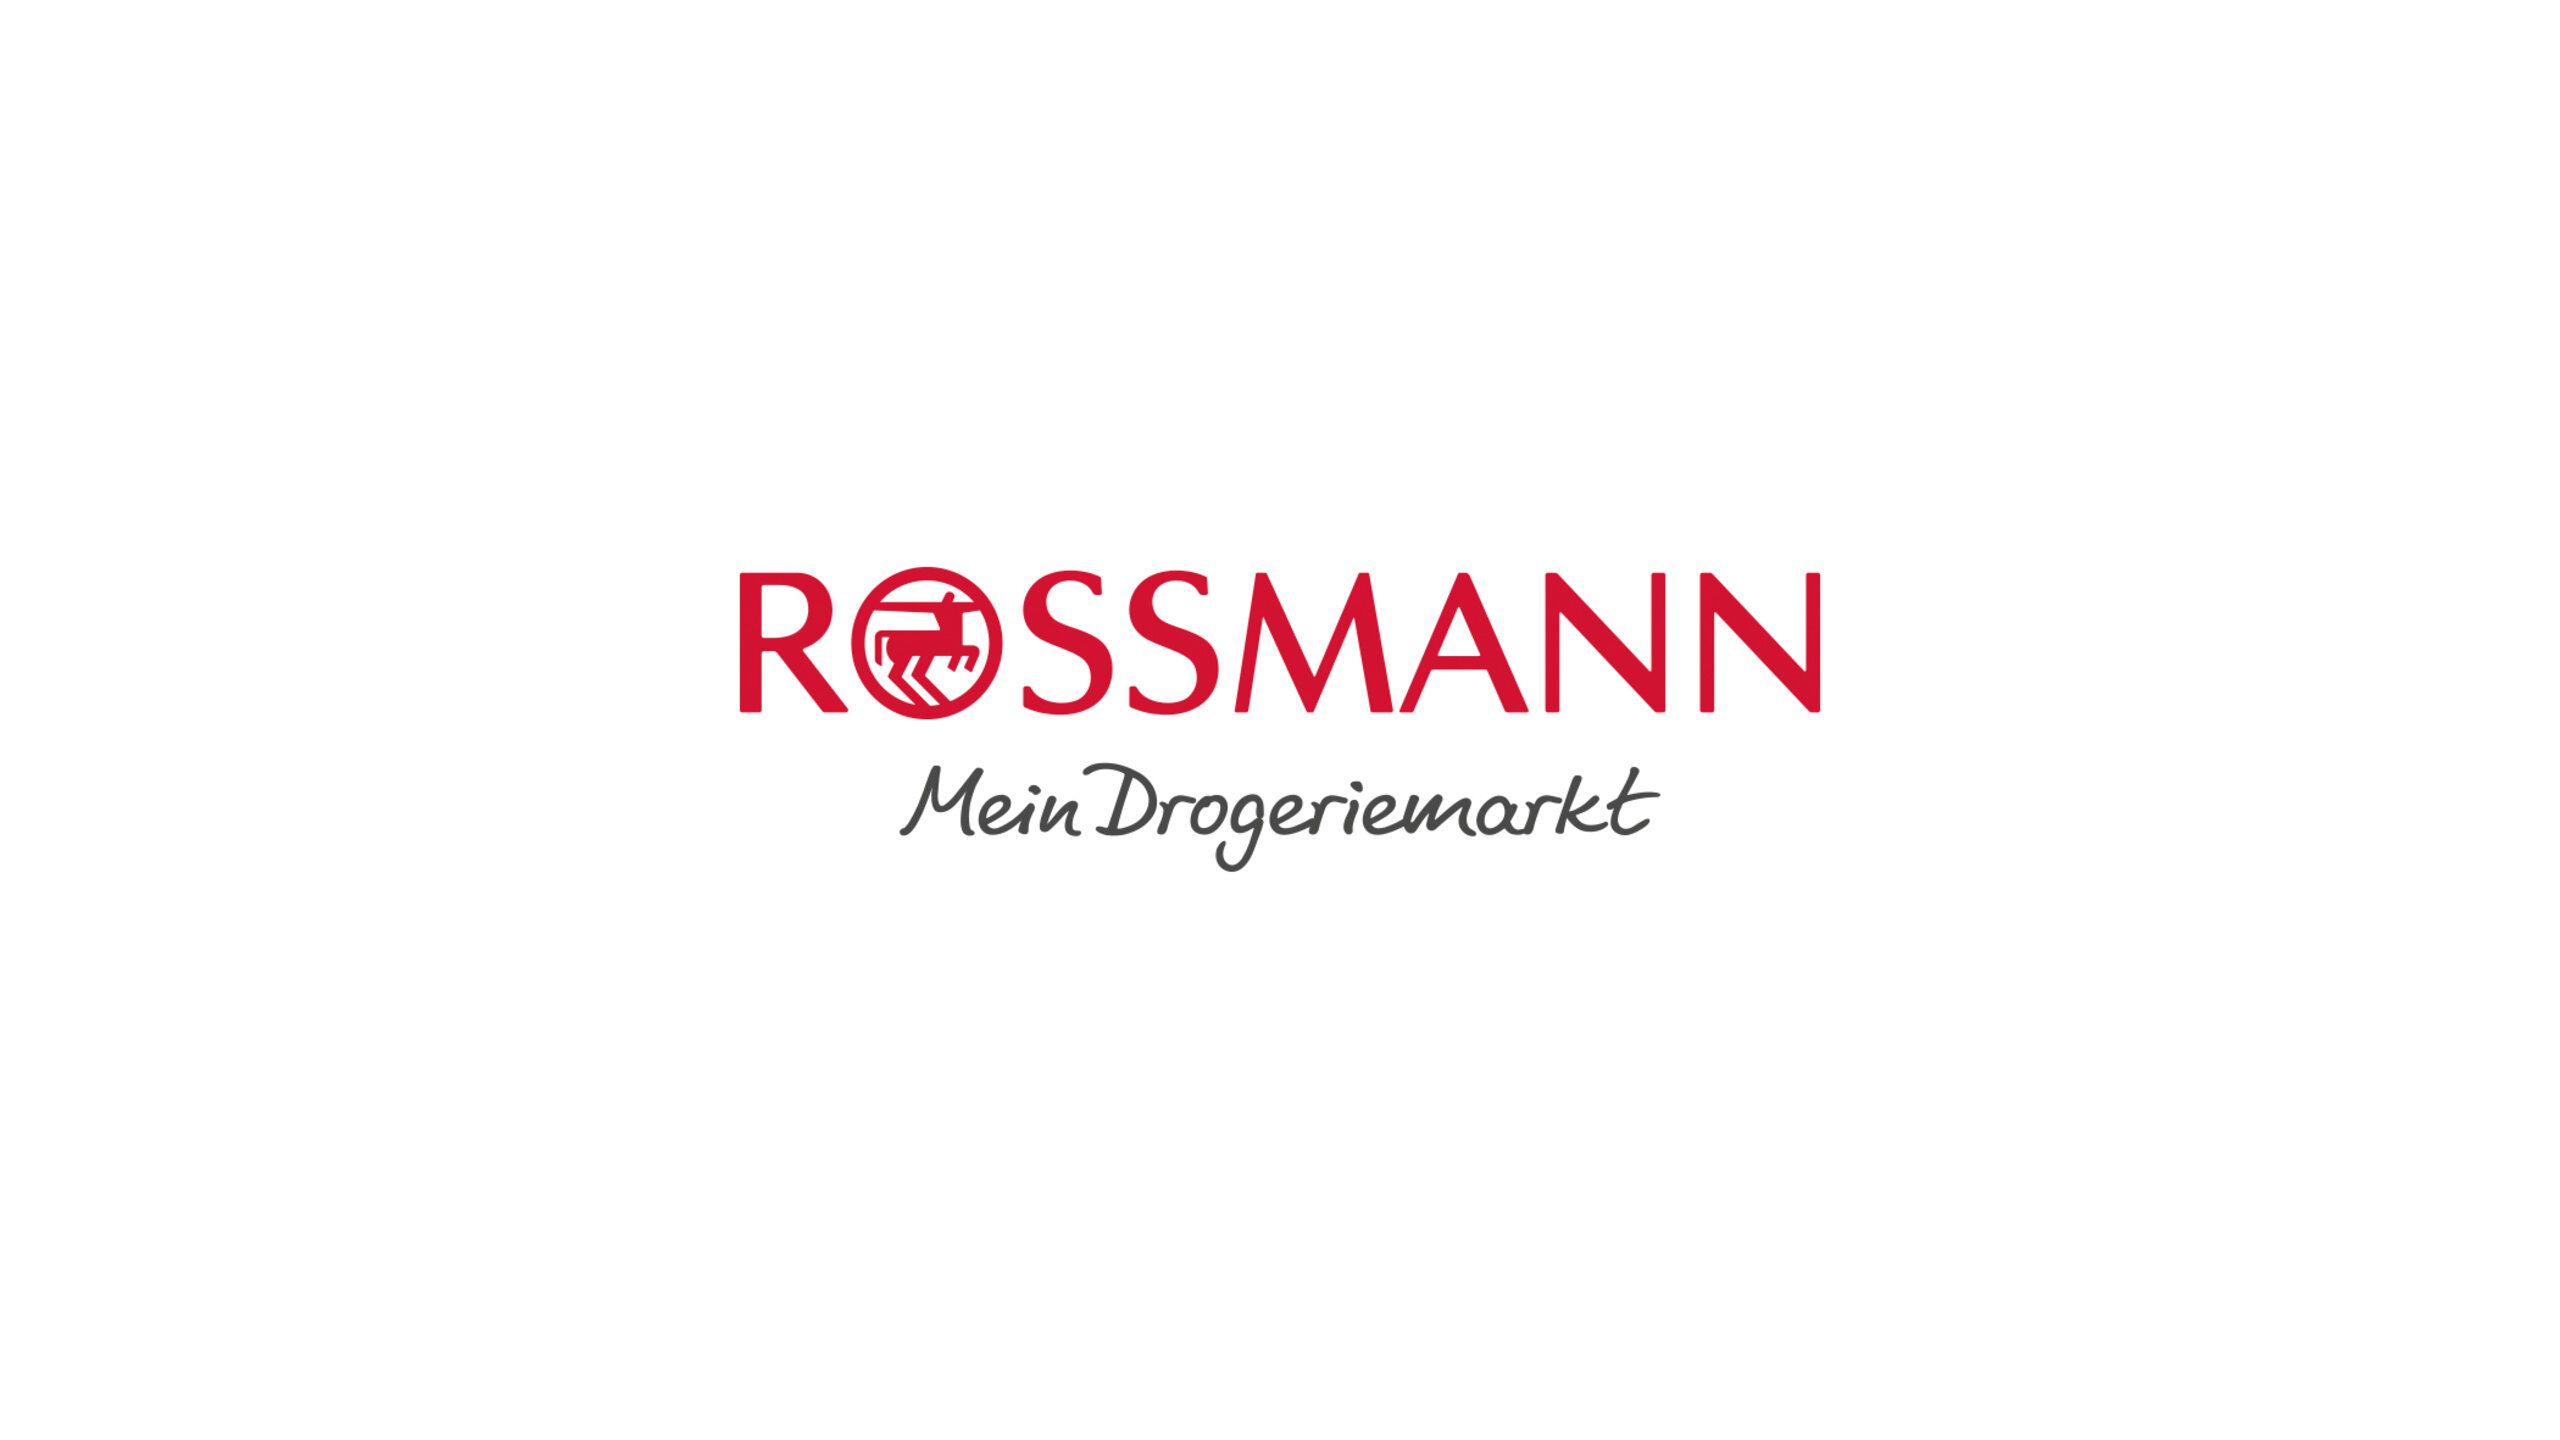 Das Logo von Rossmann mit dem Text "Mein Drogeriemarkt"